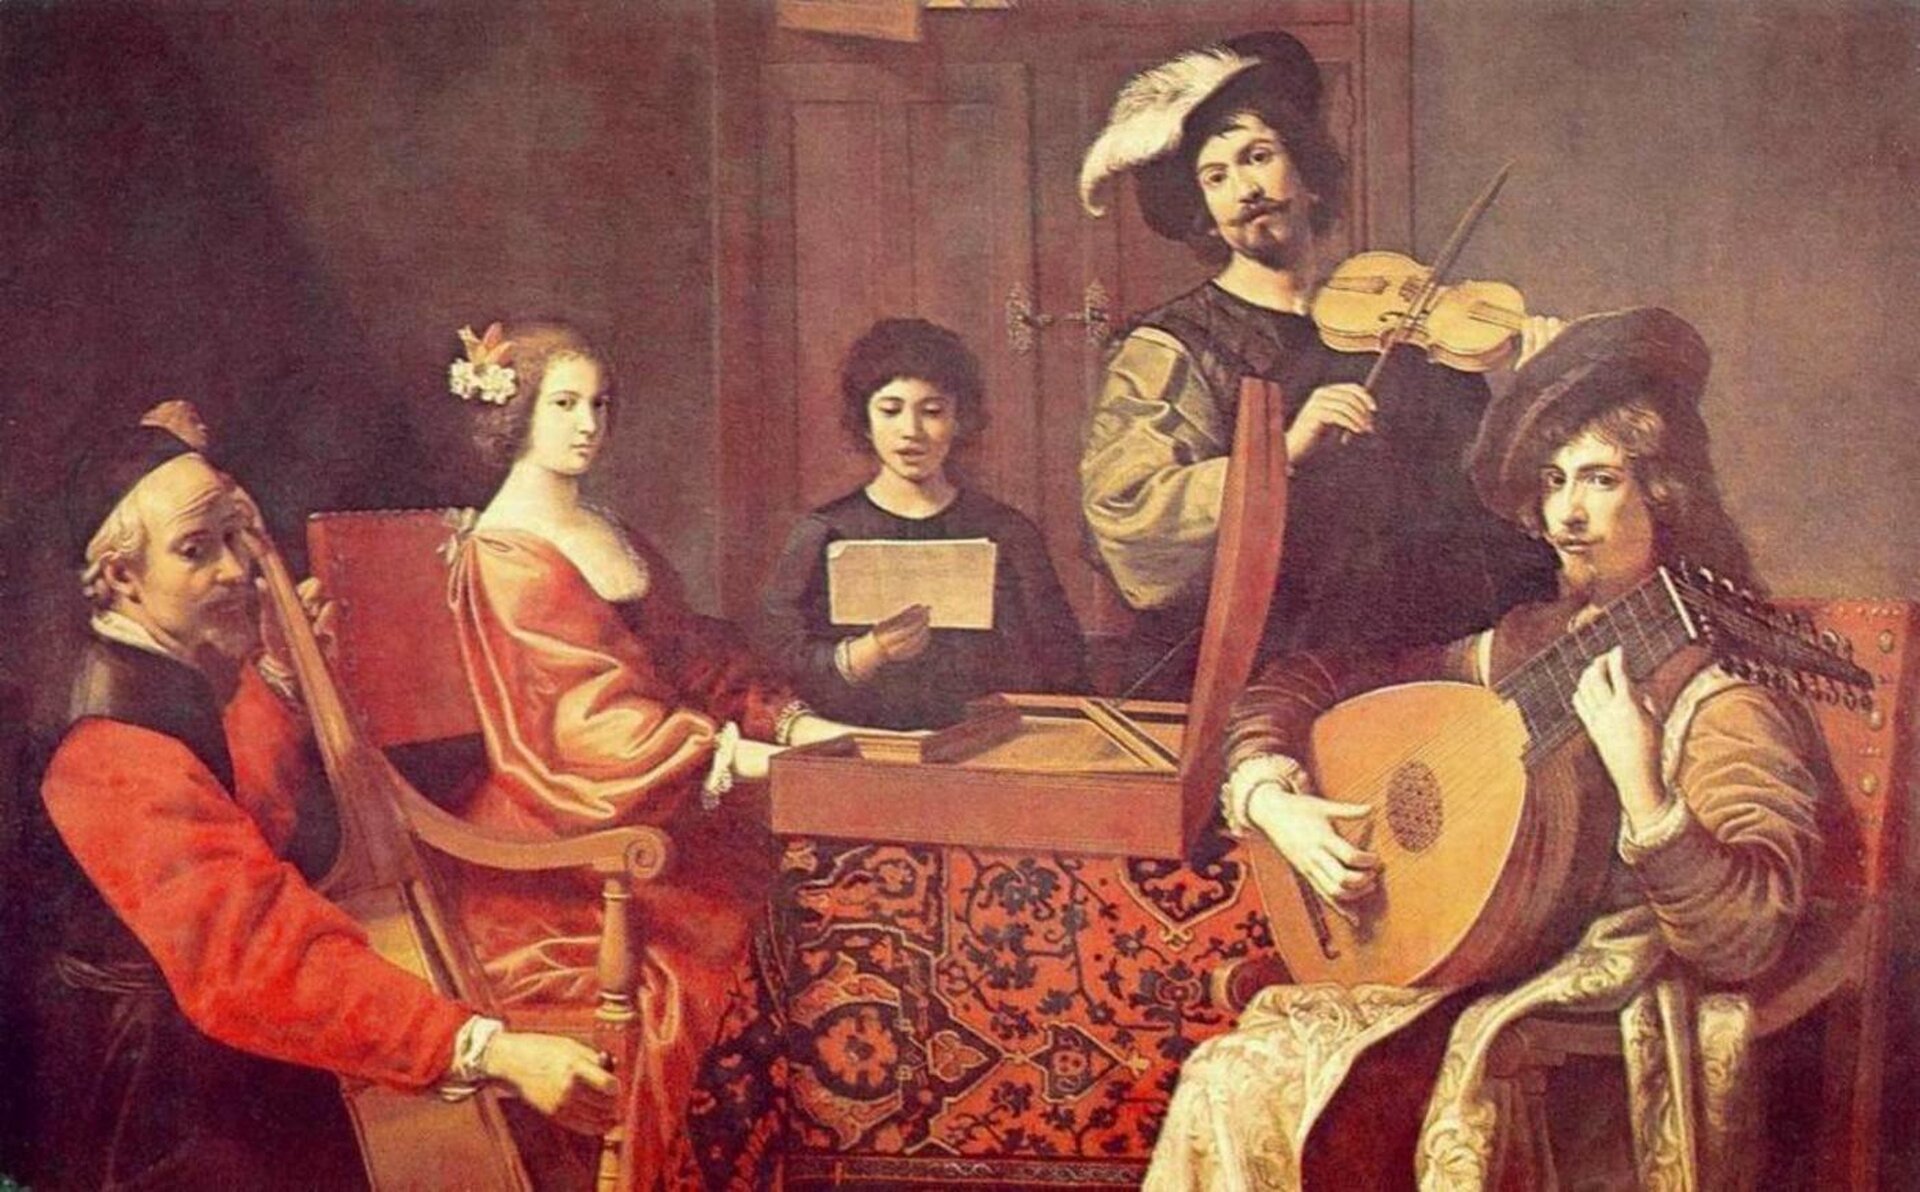 Obraz przedstawiający muzyków baroku. Cztery postaci grają na instrumentach, a jedna prawdopodobnie śpiewa. Stroje i kolorystyka charakterystyczne dla epoki.